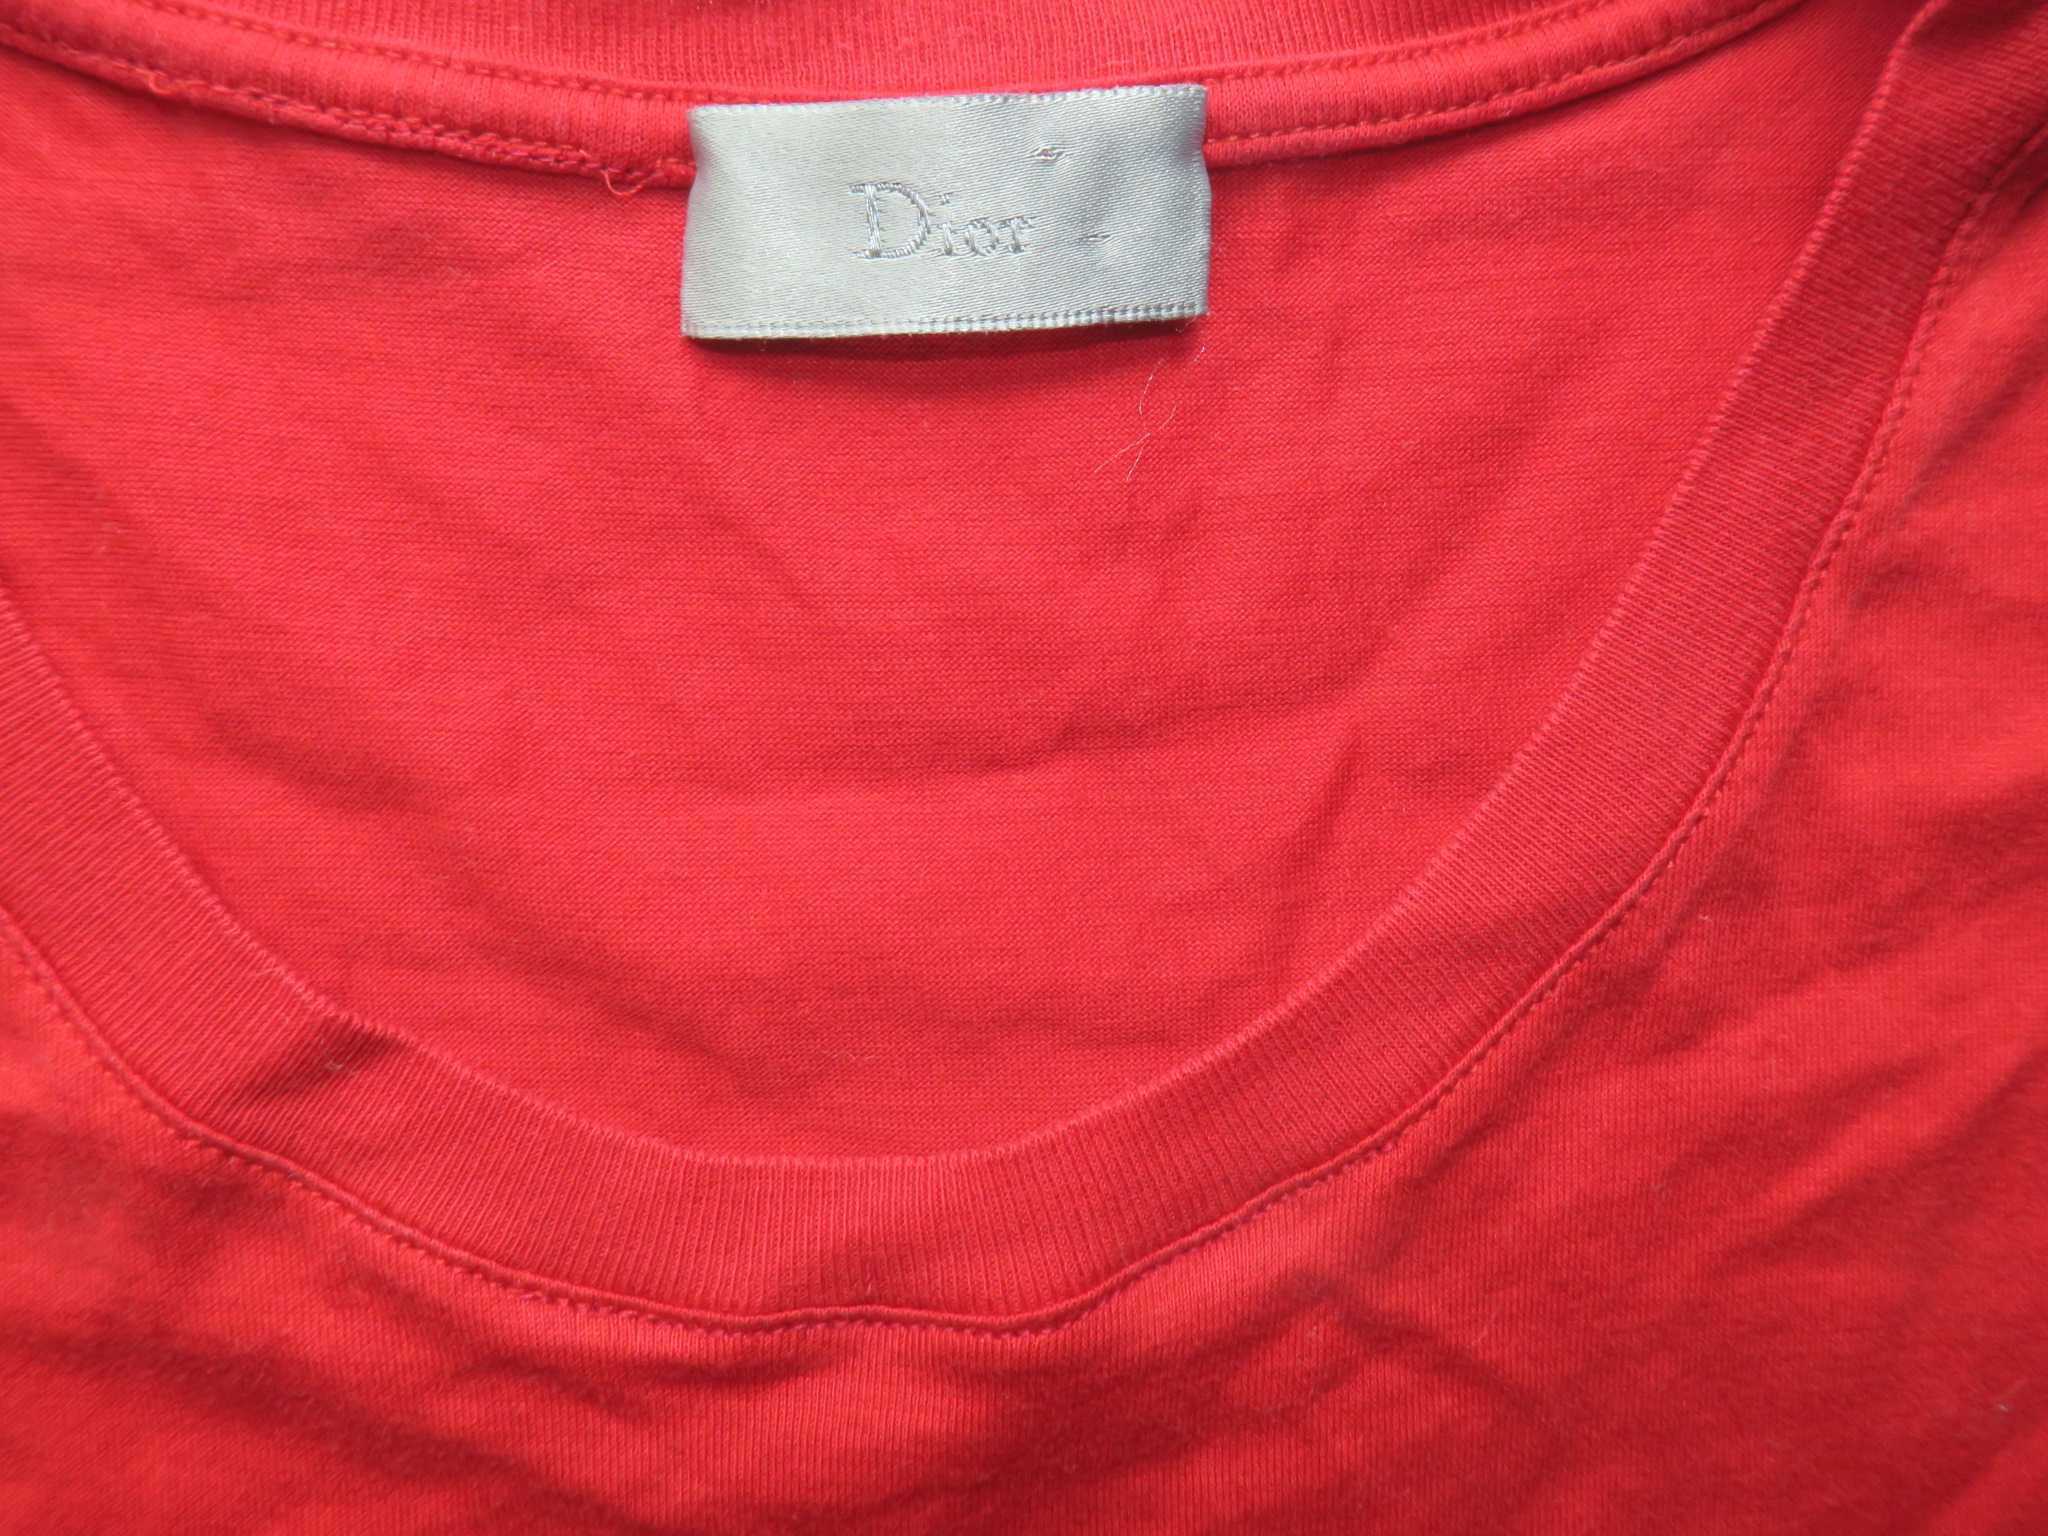 Dior koszulka koszulka z logo pszczółka t-shirt 50/M/L